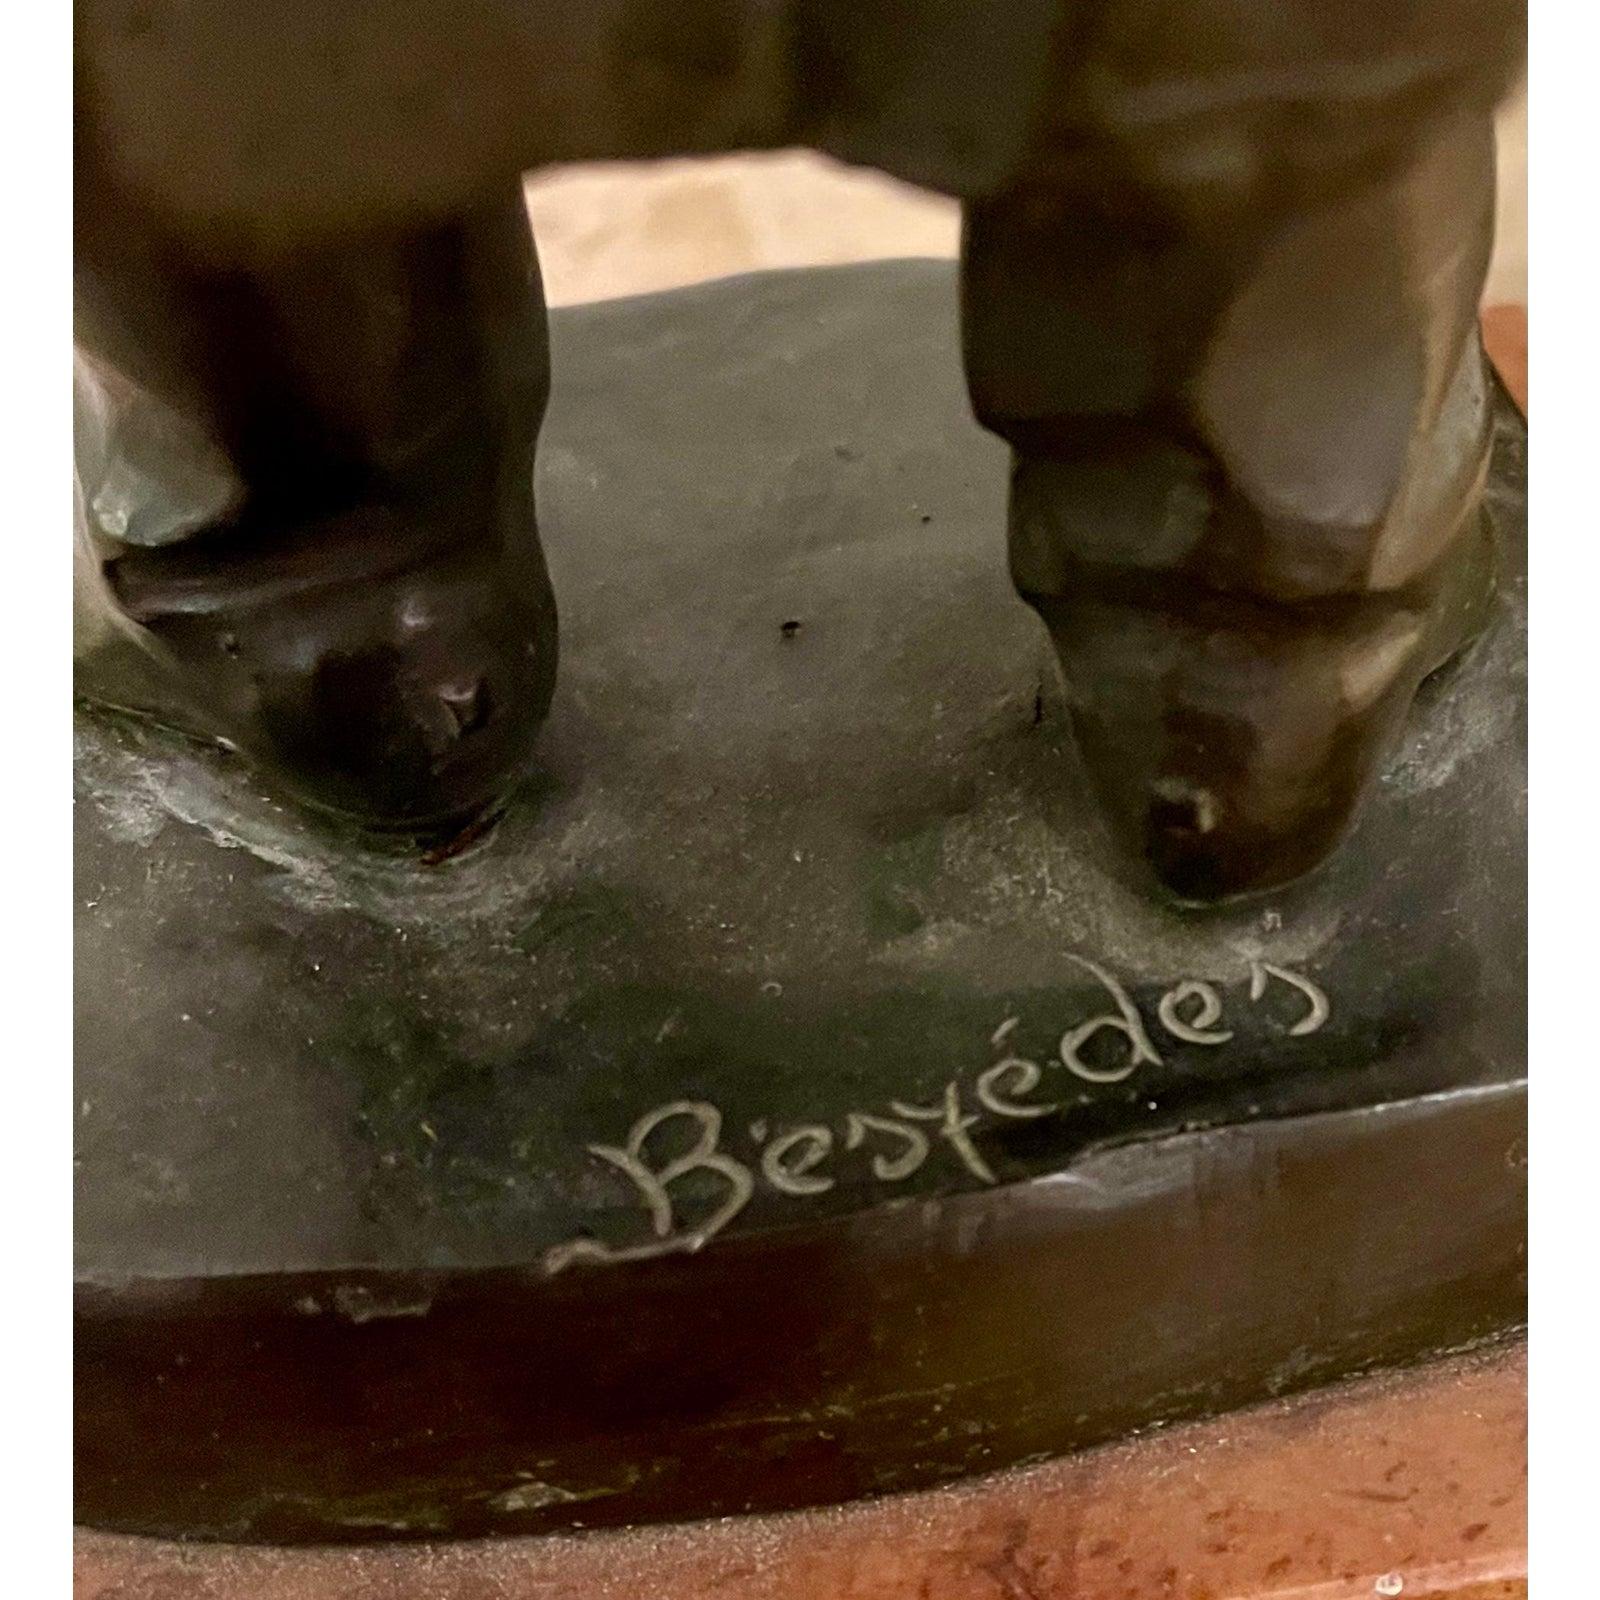 Sculpture hongroise en bronze Art Déco ancien : le savant par Laslo Janos Beszedes

Informations complémentaires :
Matériaux : Bronze
Couleur : Bronze
Période : 1910s
Styles : Art déco
Sujets d'art : Figure
Type d'article : Vintage, antique ou